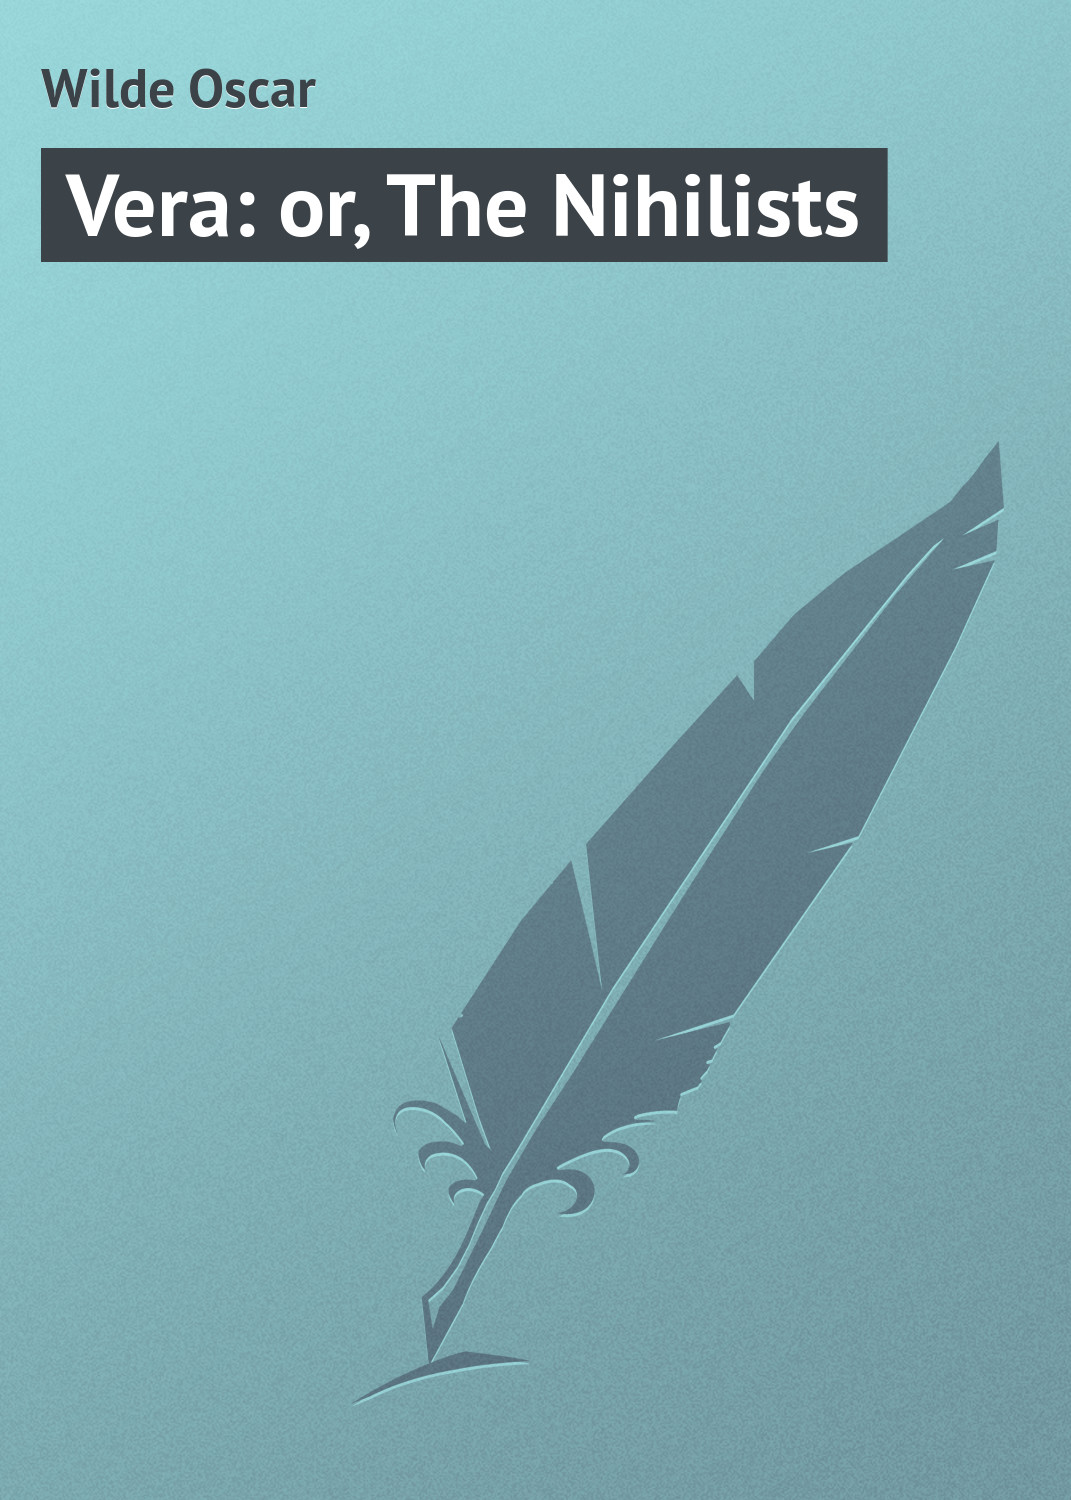 Книга Vera: or, The Nihilists из серии , созданная Oscar Wilde, может относится к жанру Иностранные языки, Зарубежная классика, Зарубежная драматургия. Стоимость электронной книги Vera: or, The Nihilists с идентификатором 23156659 составляет 5.99 руб.